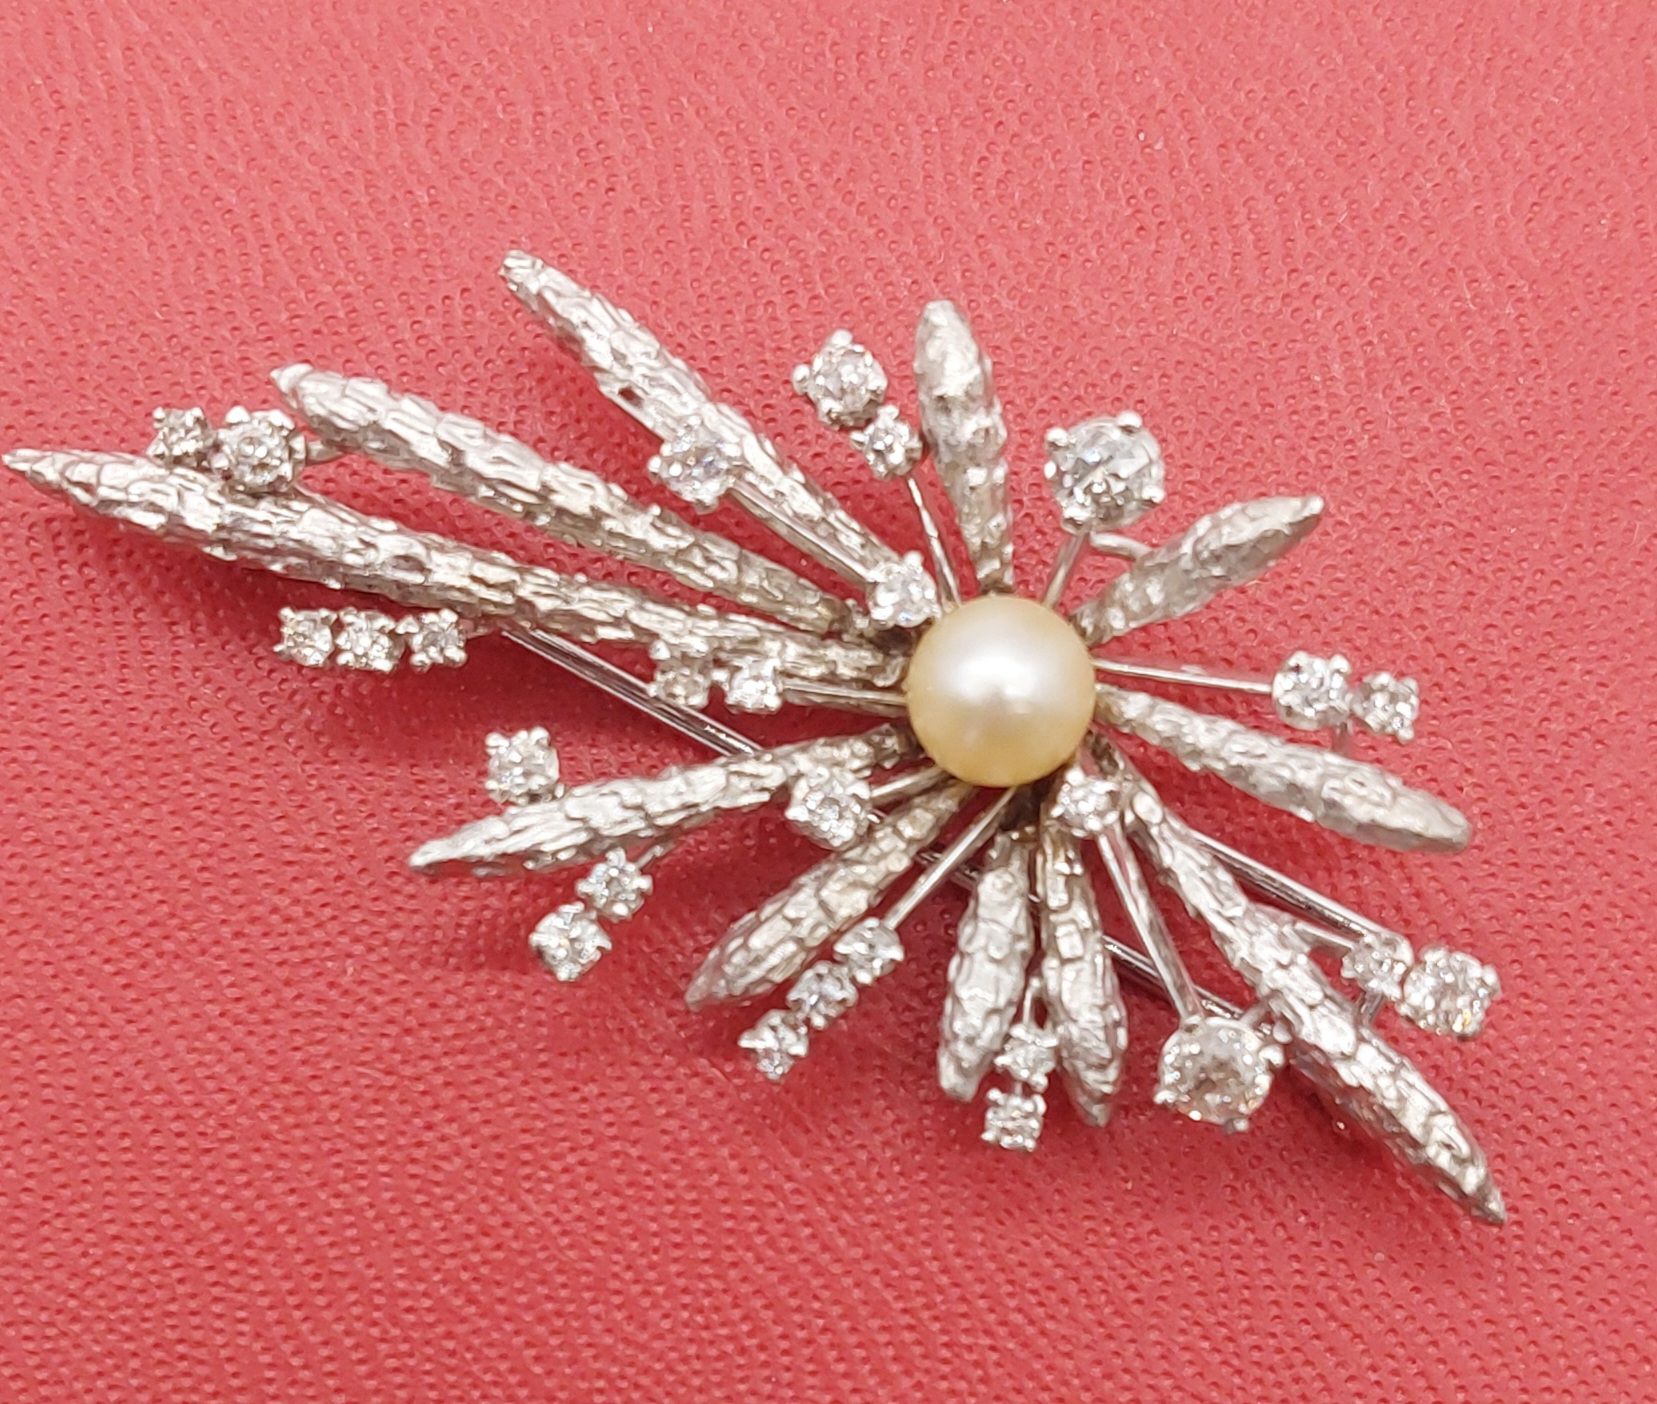 Null Spilla in oro bianco e diamanti con perla

PB : 13,70 g